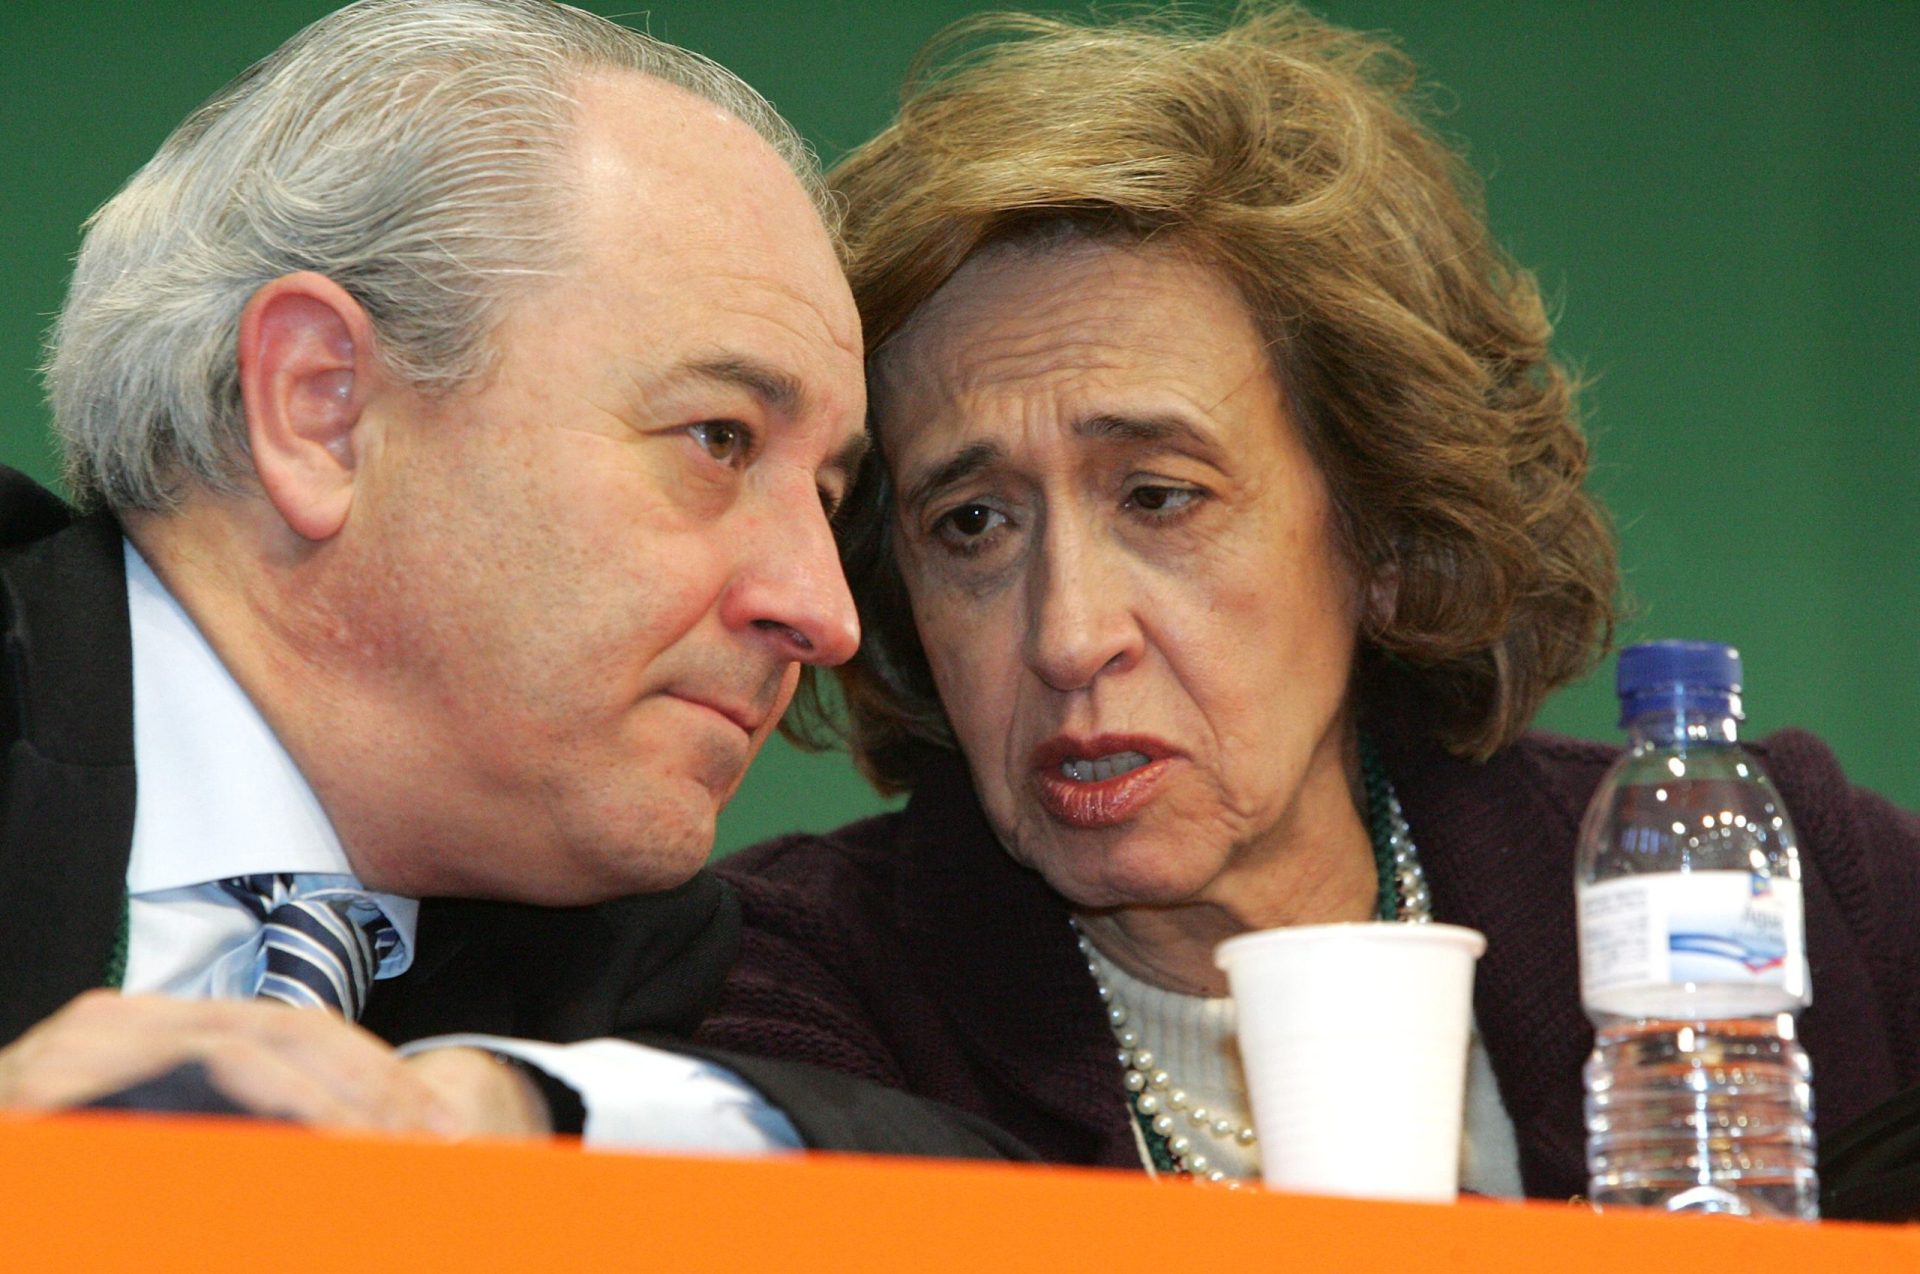 Morais Sarmento e Ferreira Leite reforçam oposição de Rui Rio a Passos Coelho